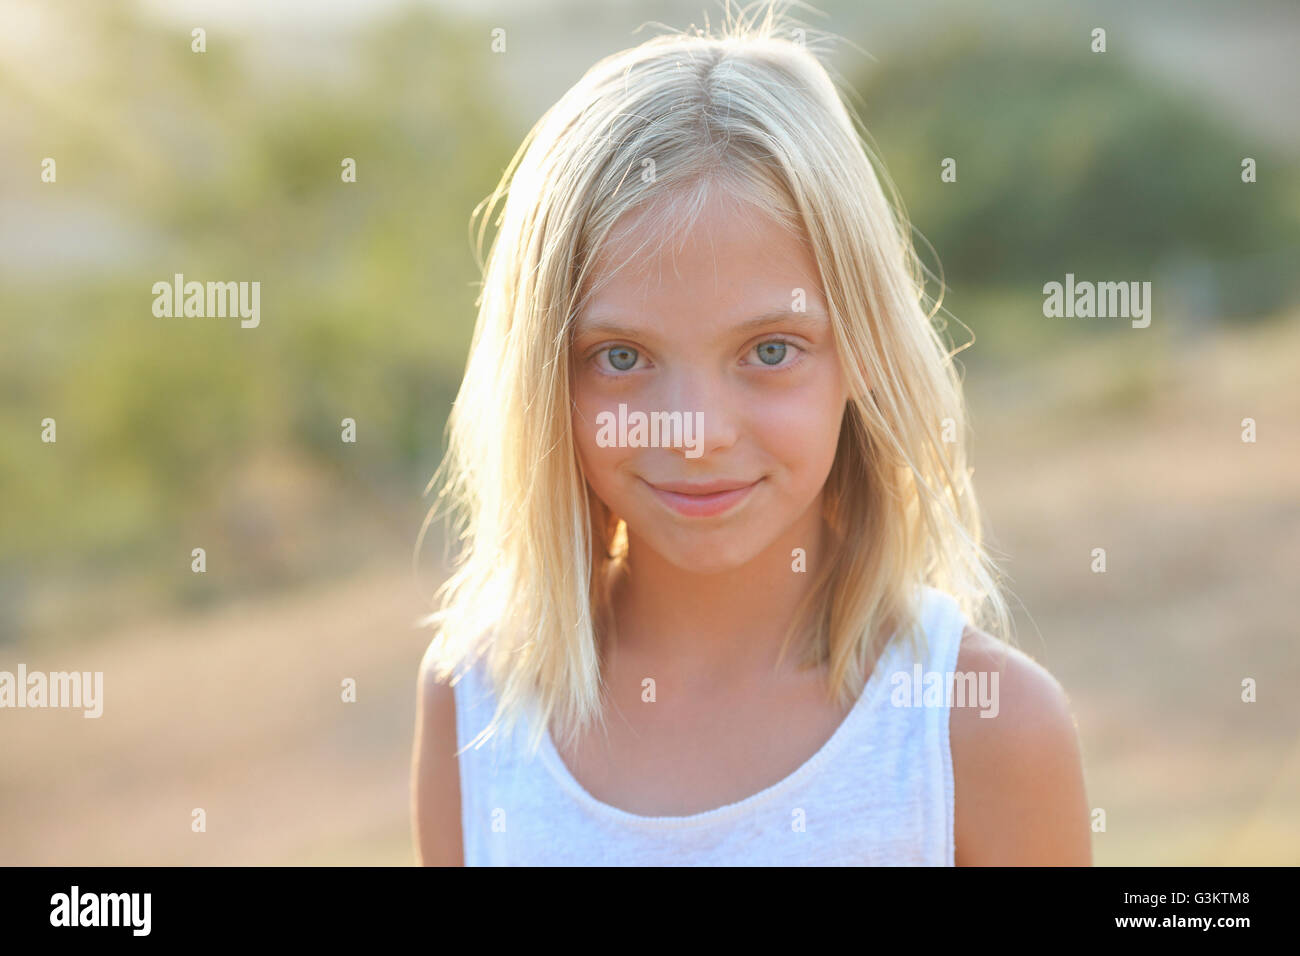 Portrait de jeune fille blonde aux yeux bleus, Castelnuovo Berardenga, Toscane, Italie Banque D'Images